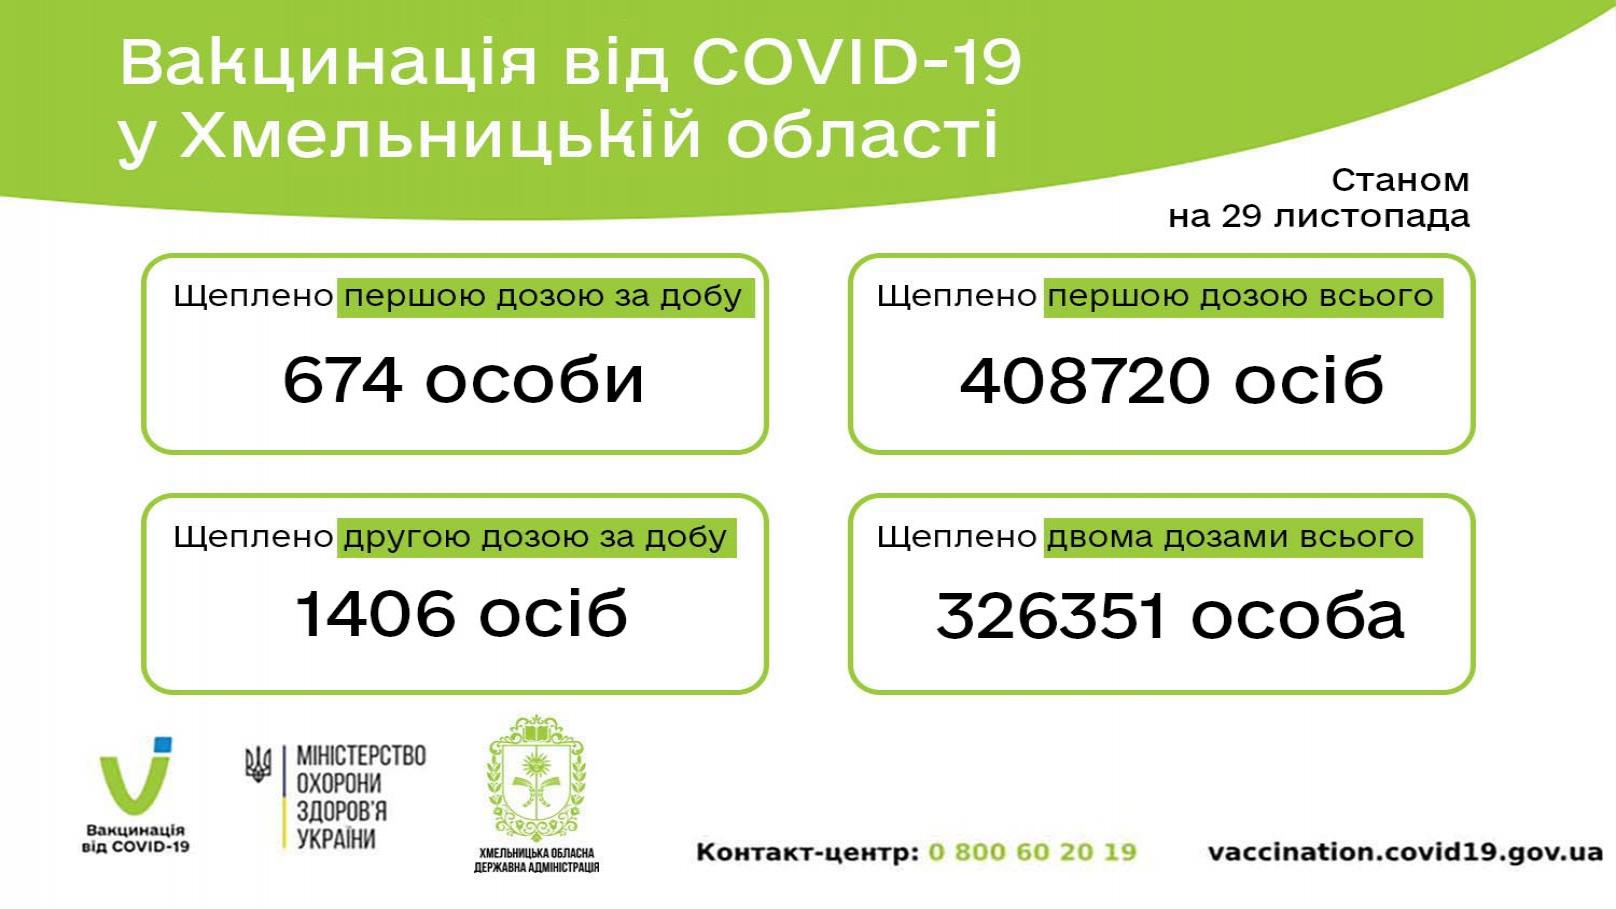 http://dunrada.gov.ua/uploadfile/archive_news/2021/11/29/2021-11-29_9061/images/images-80275.jpg